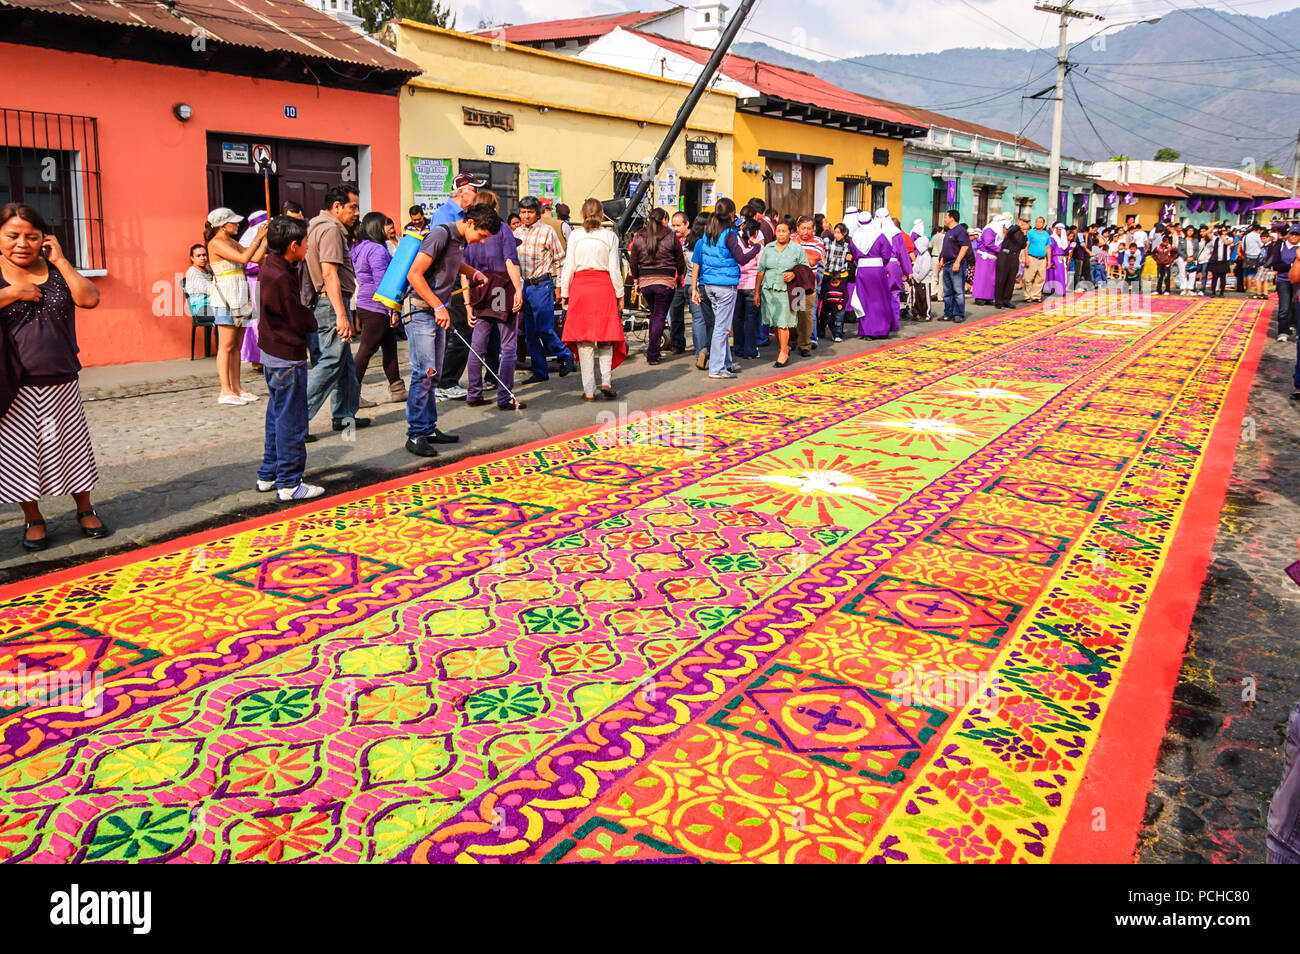 Antigua, Guatemala - 6 Avril, 2012 : Procession de la Semaine Sainte en tapis ville coloniale avec la plupart des célébrations de la Semaine sainte célèbre en Amérique latine. Banque D'Images